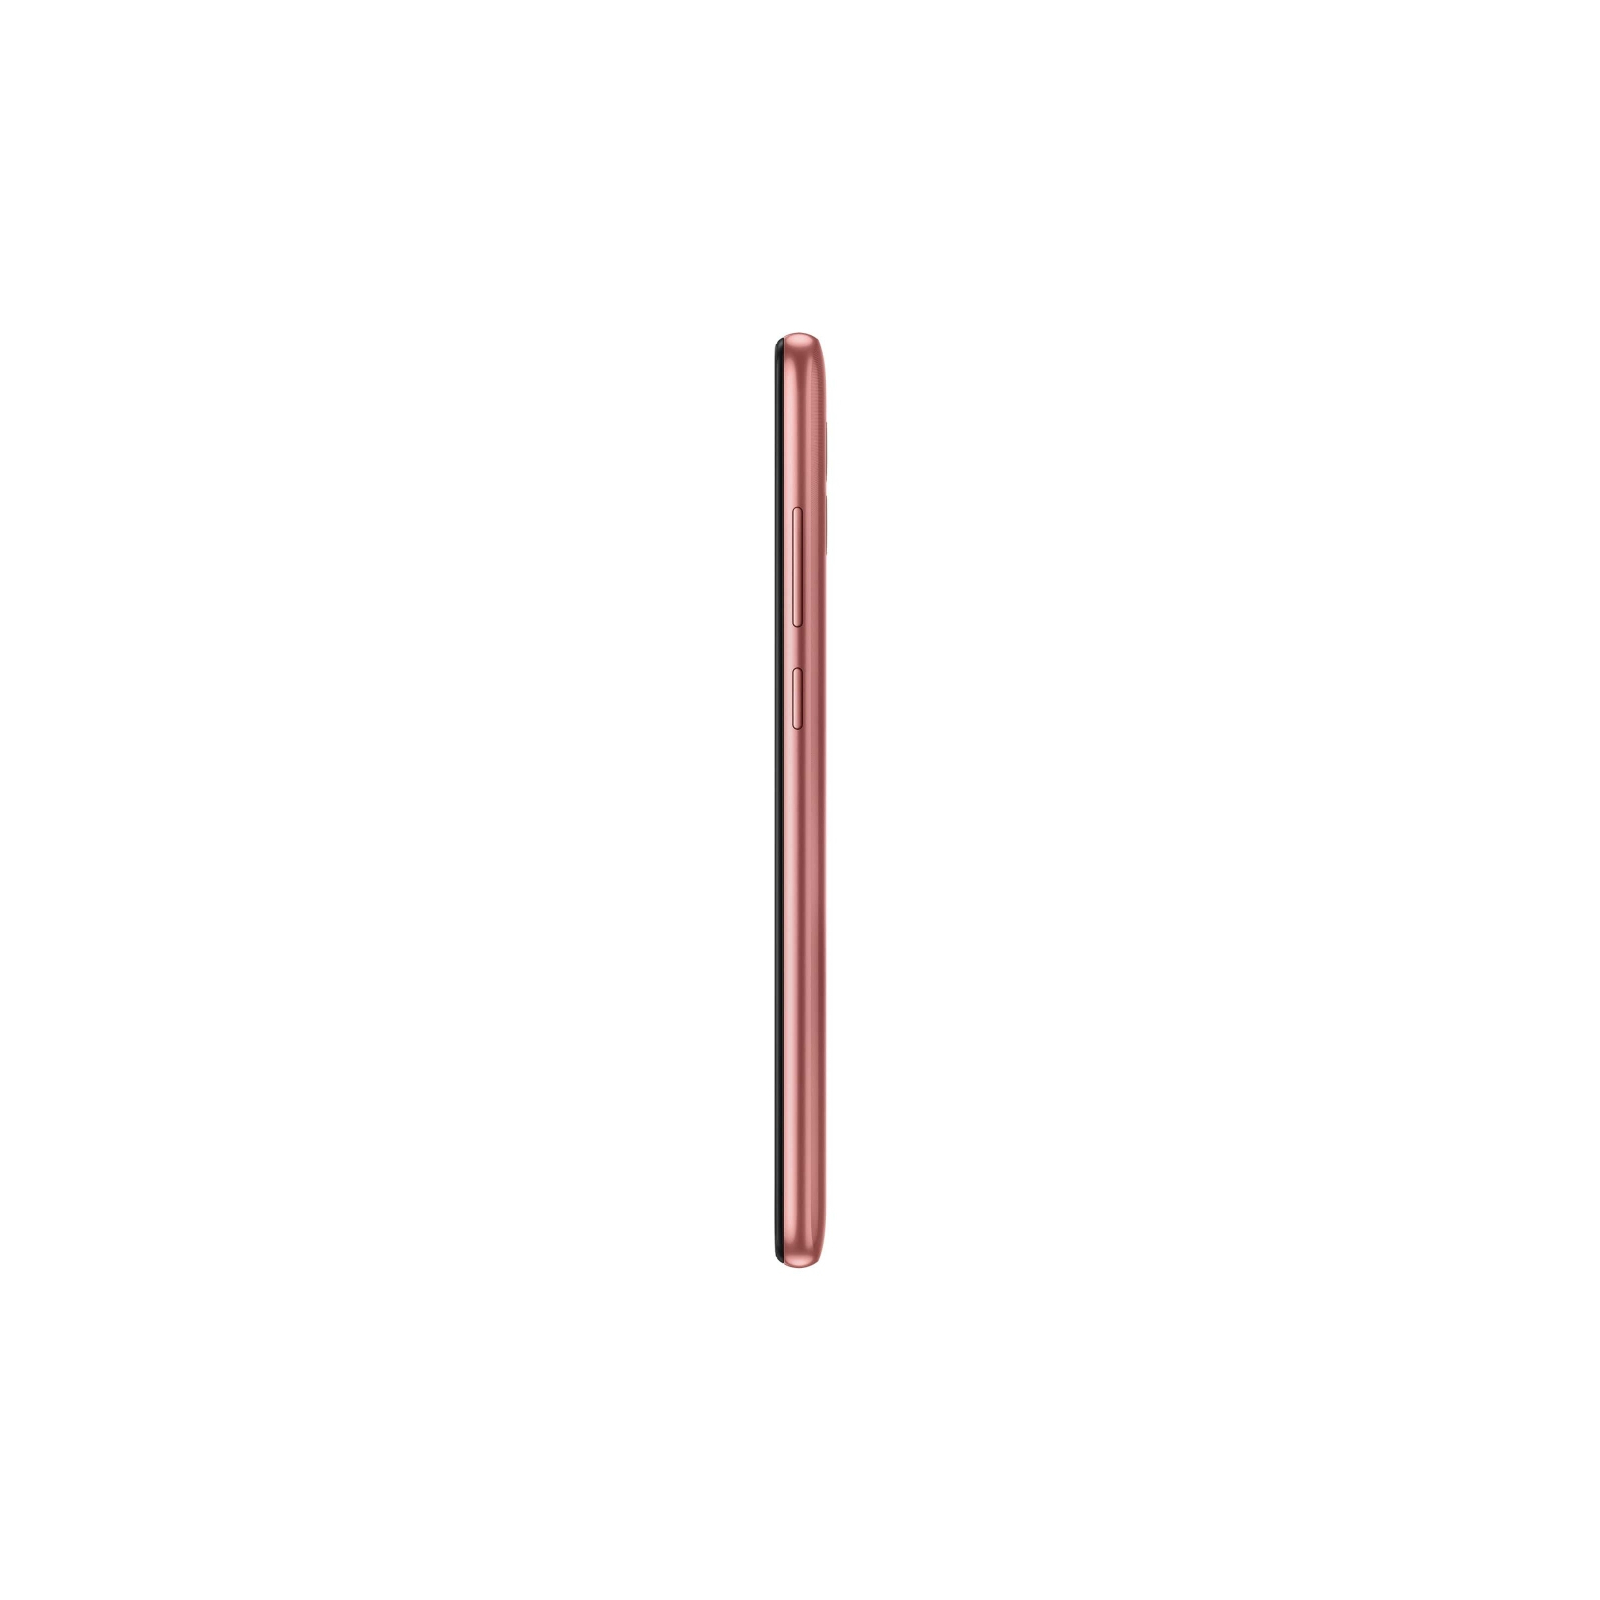 Мобильный телефон Samsung Galaxy A04e 3/32Gb Copper (SM-A042FZCDSEK) изображение 4